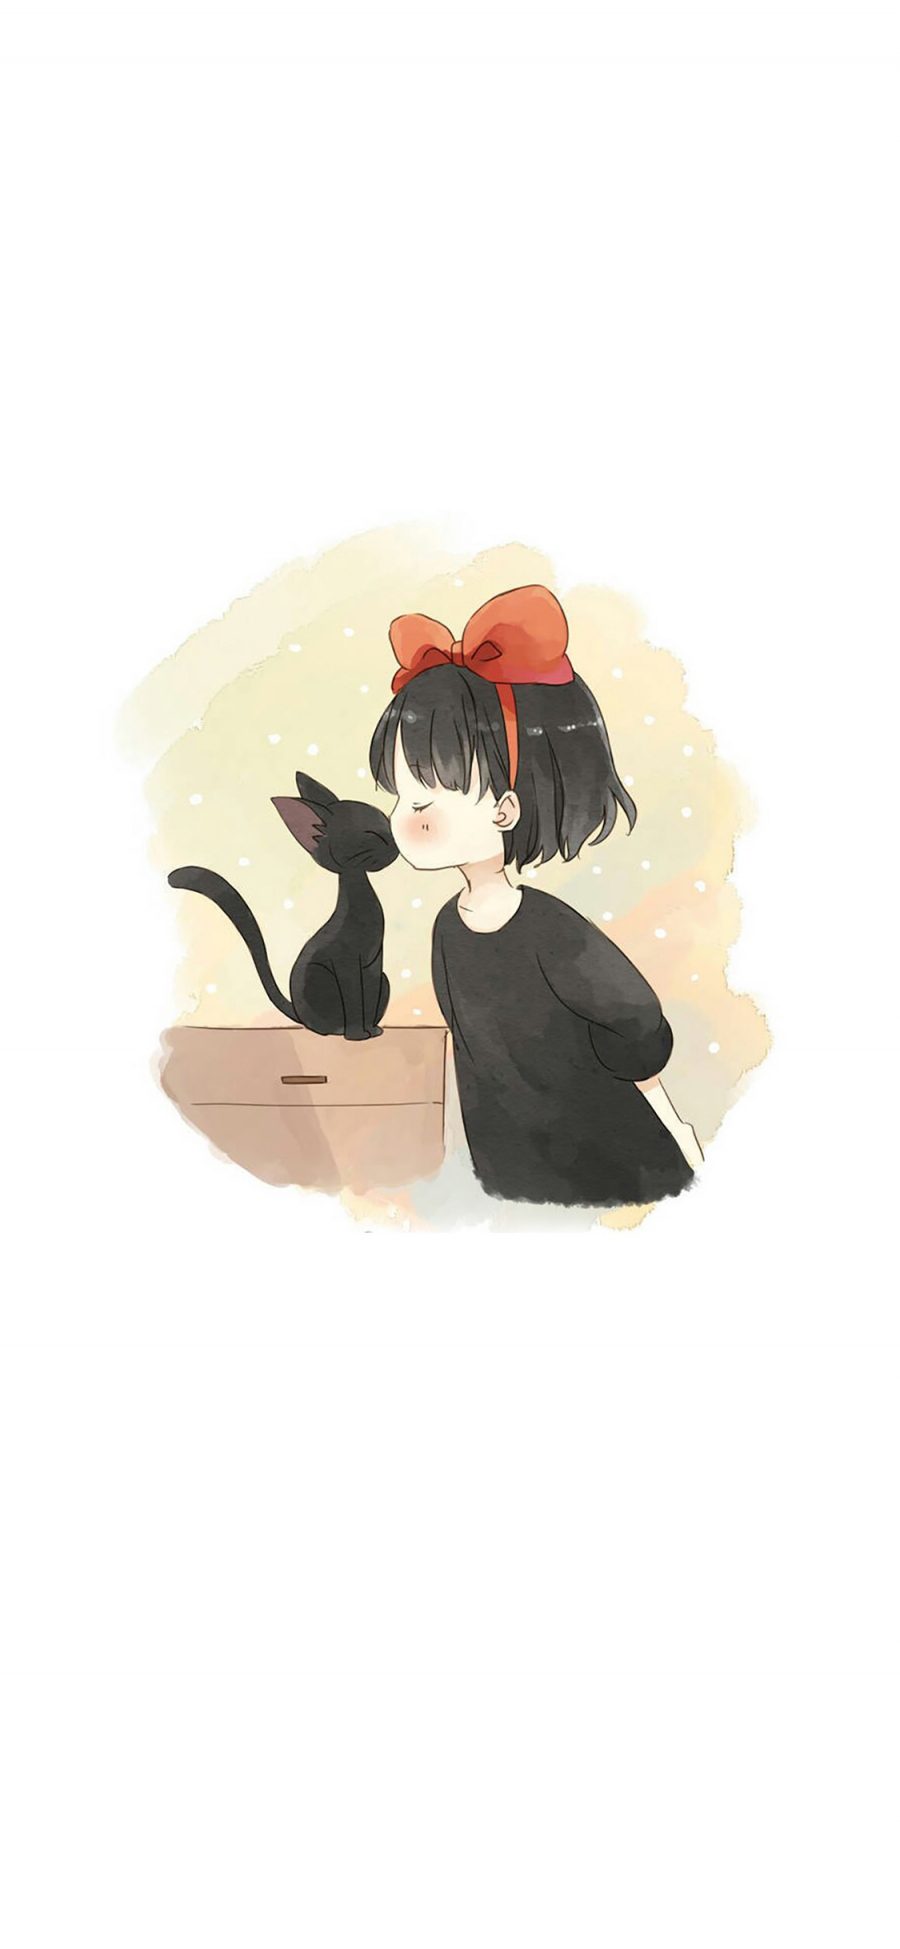 [2436×1125]魔女宅急便 宫崎骏 漫画 日本 黑猫 苹果手机动漫壁纸图片